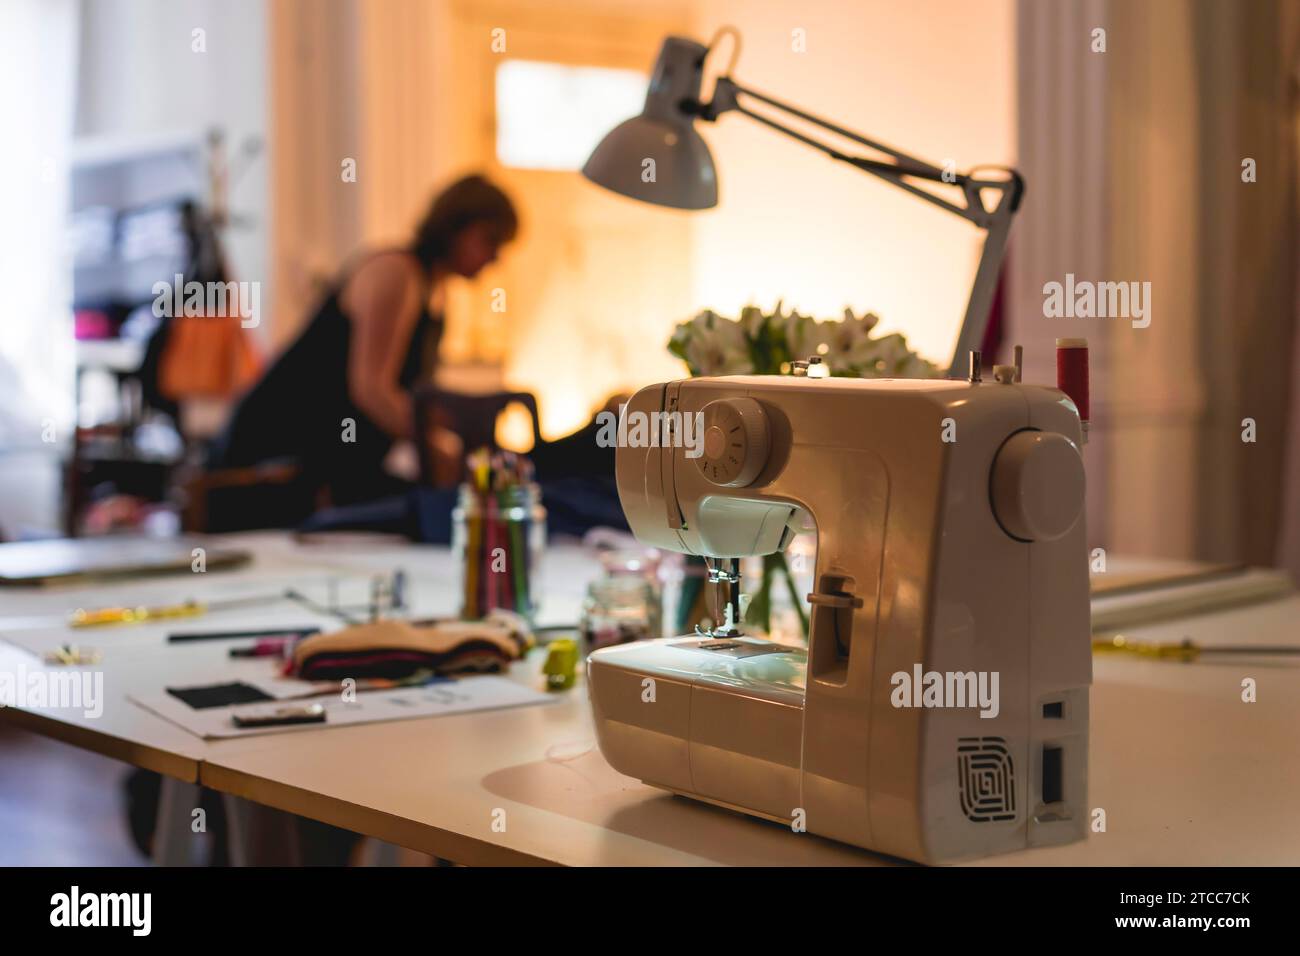 Machine à coudre moderne sur la table au studio de mode et salle d'exposition Banque D'Images